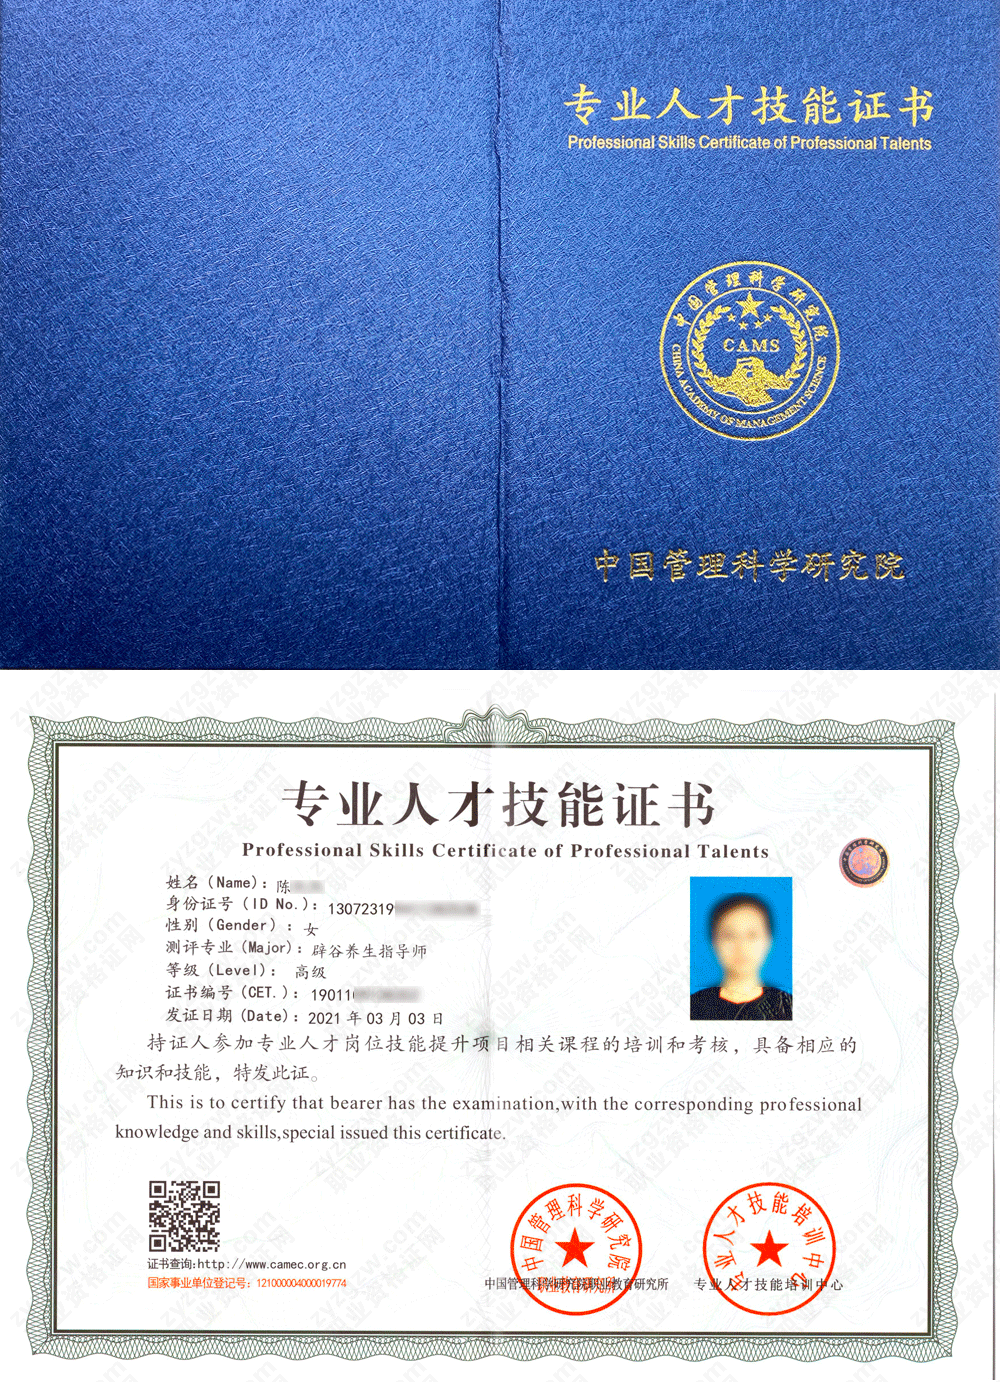 中国管理科学研究院职业教育研究所 辟谷养生指导师 专业人才技能证书